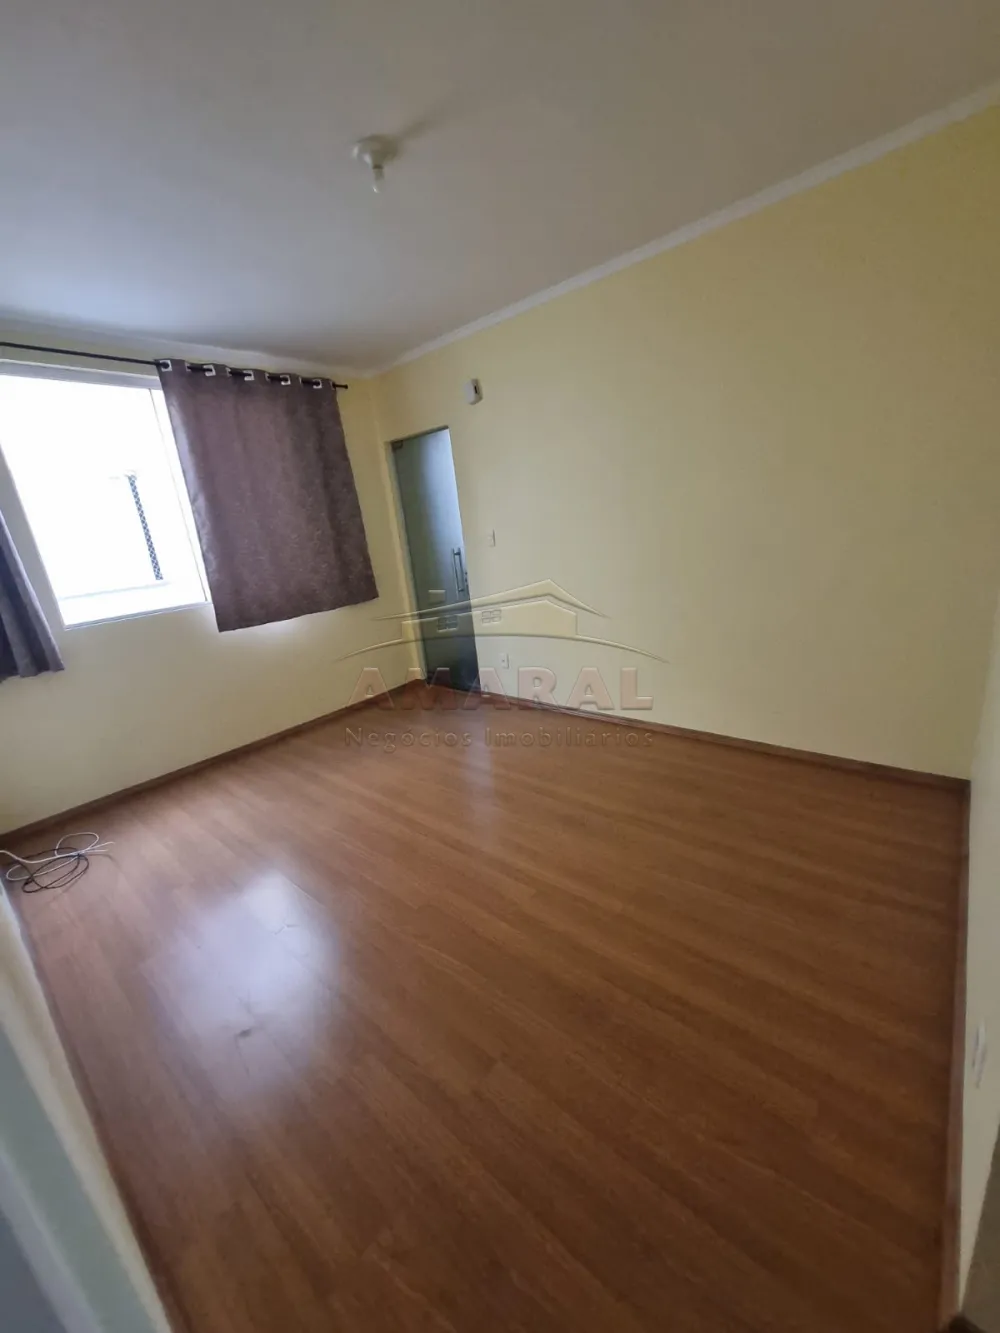 Alugar Apartamentos / Padrão em Suzano R$ 580,00 - Foto 13